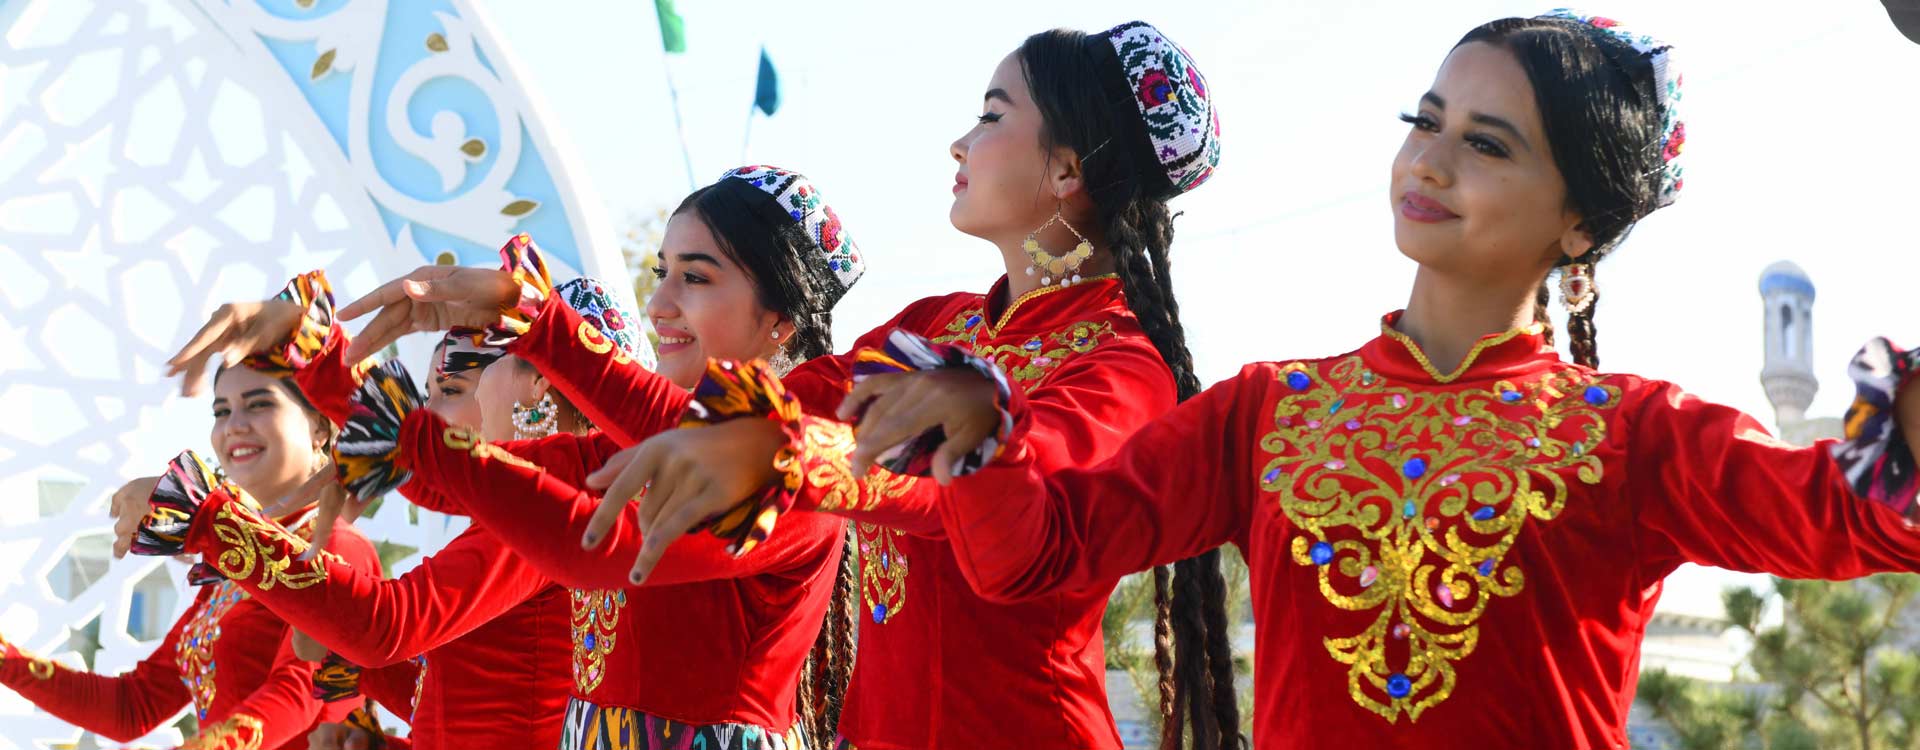 Uzbekistan Festivals